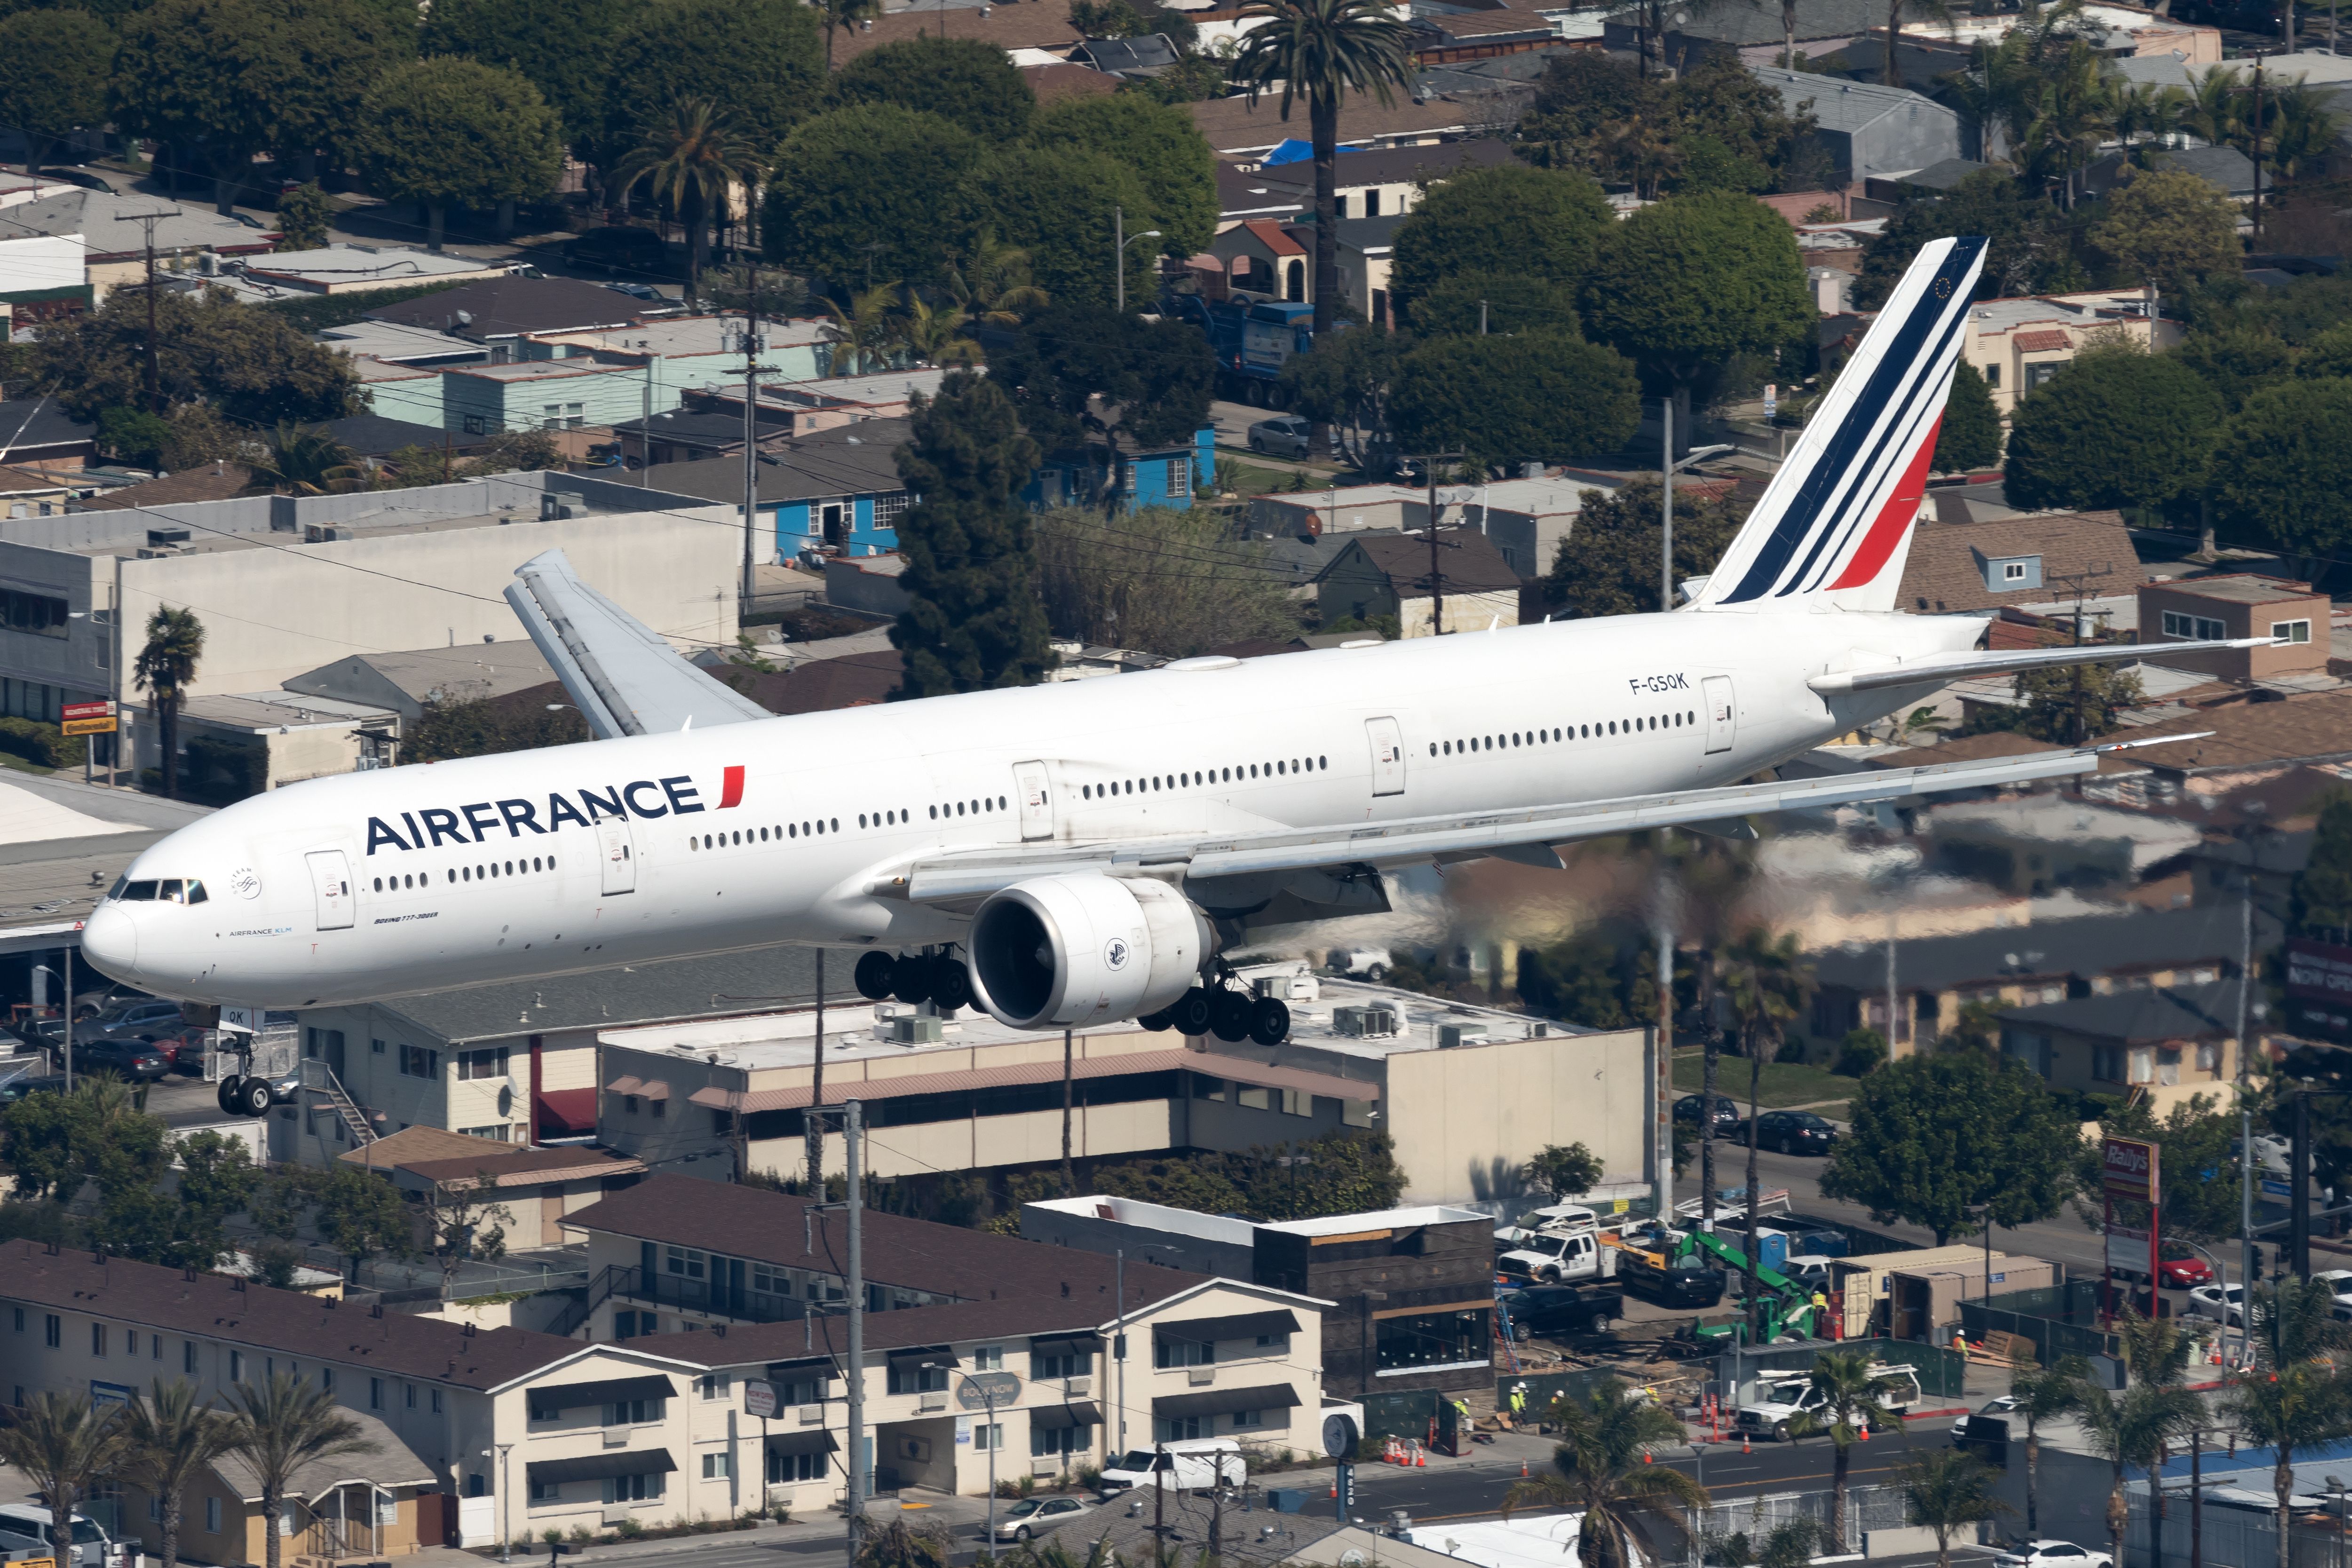 Air France Boeing 777-300ER landing